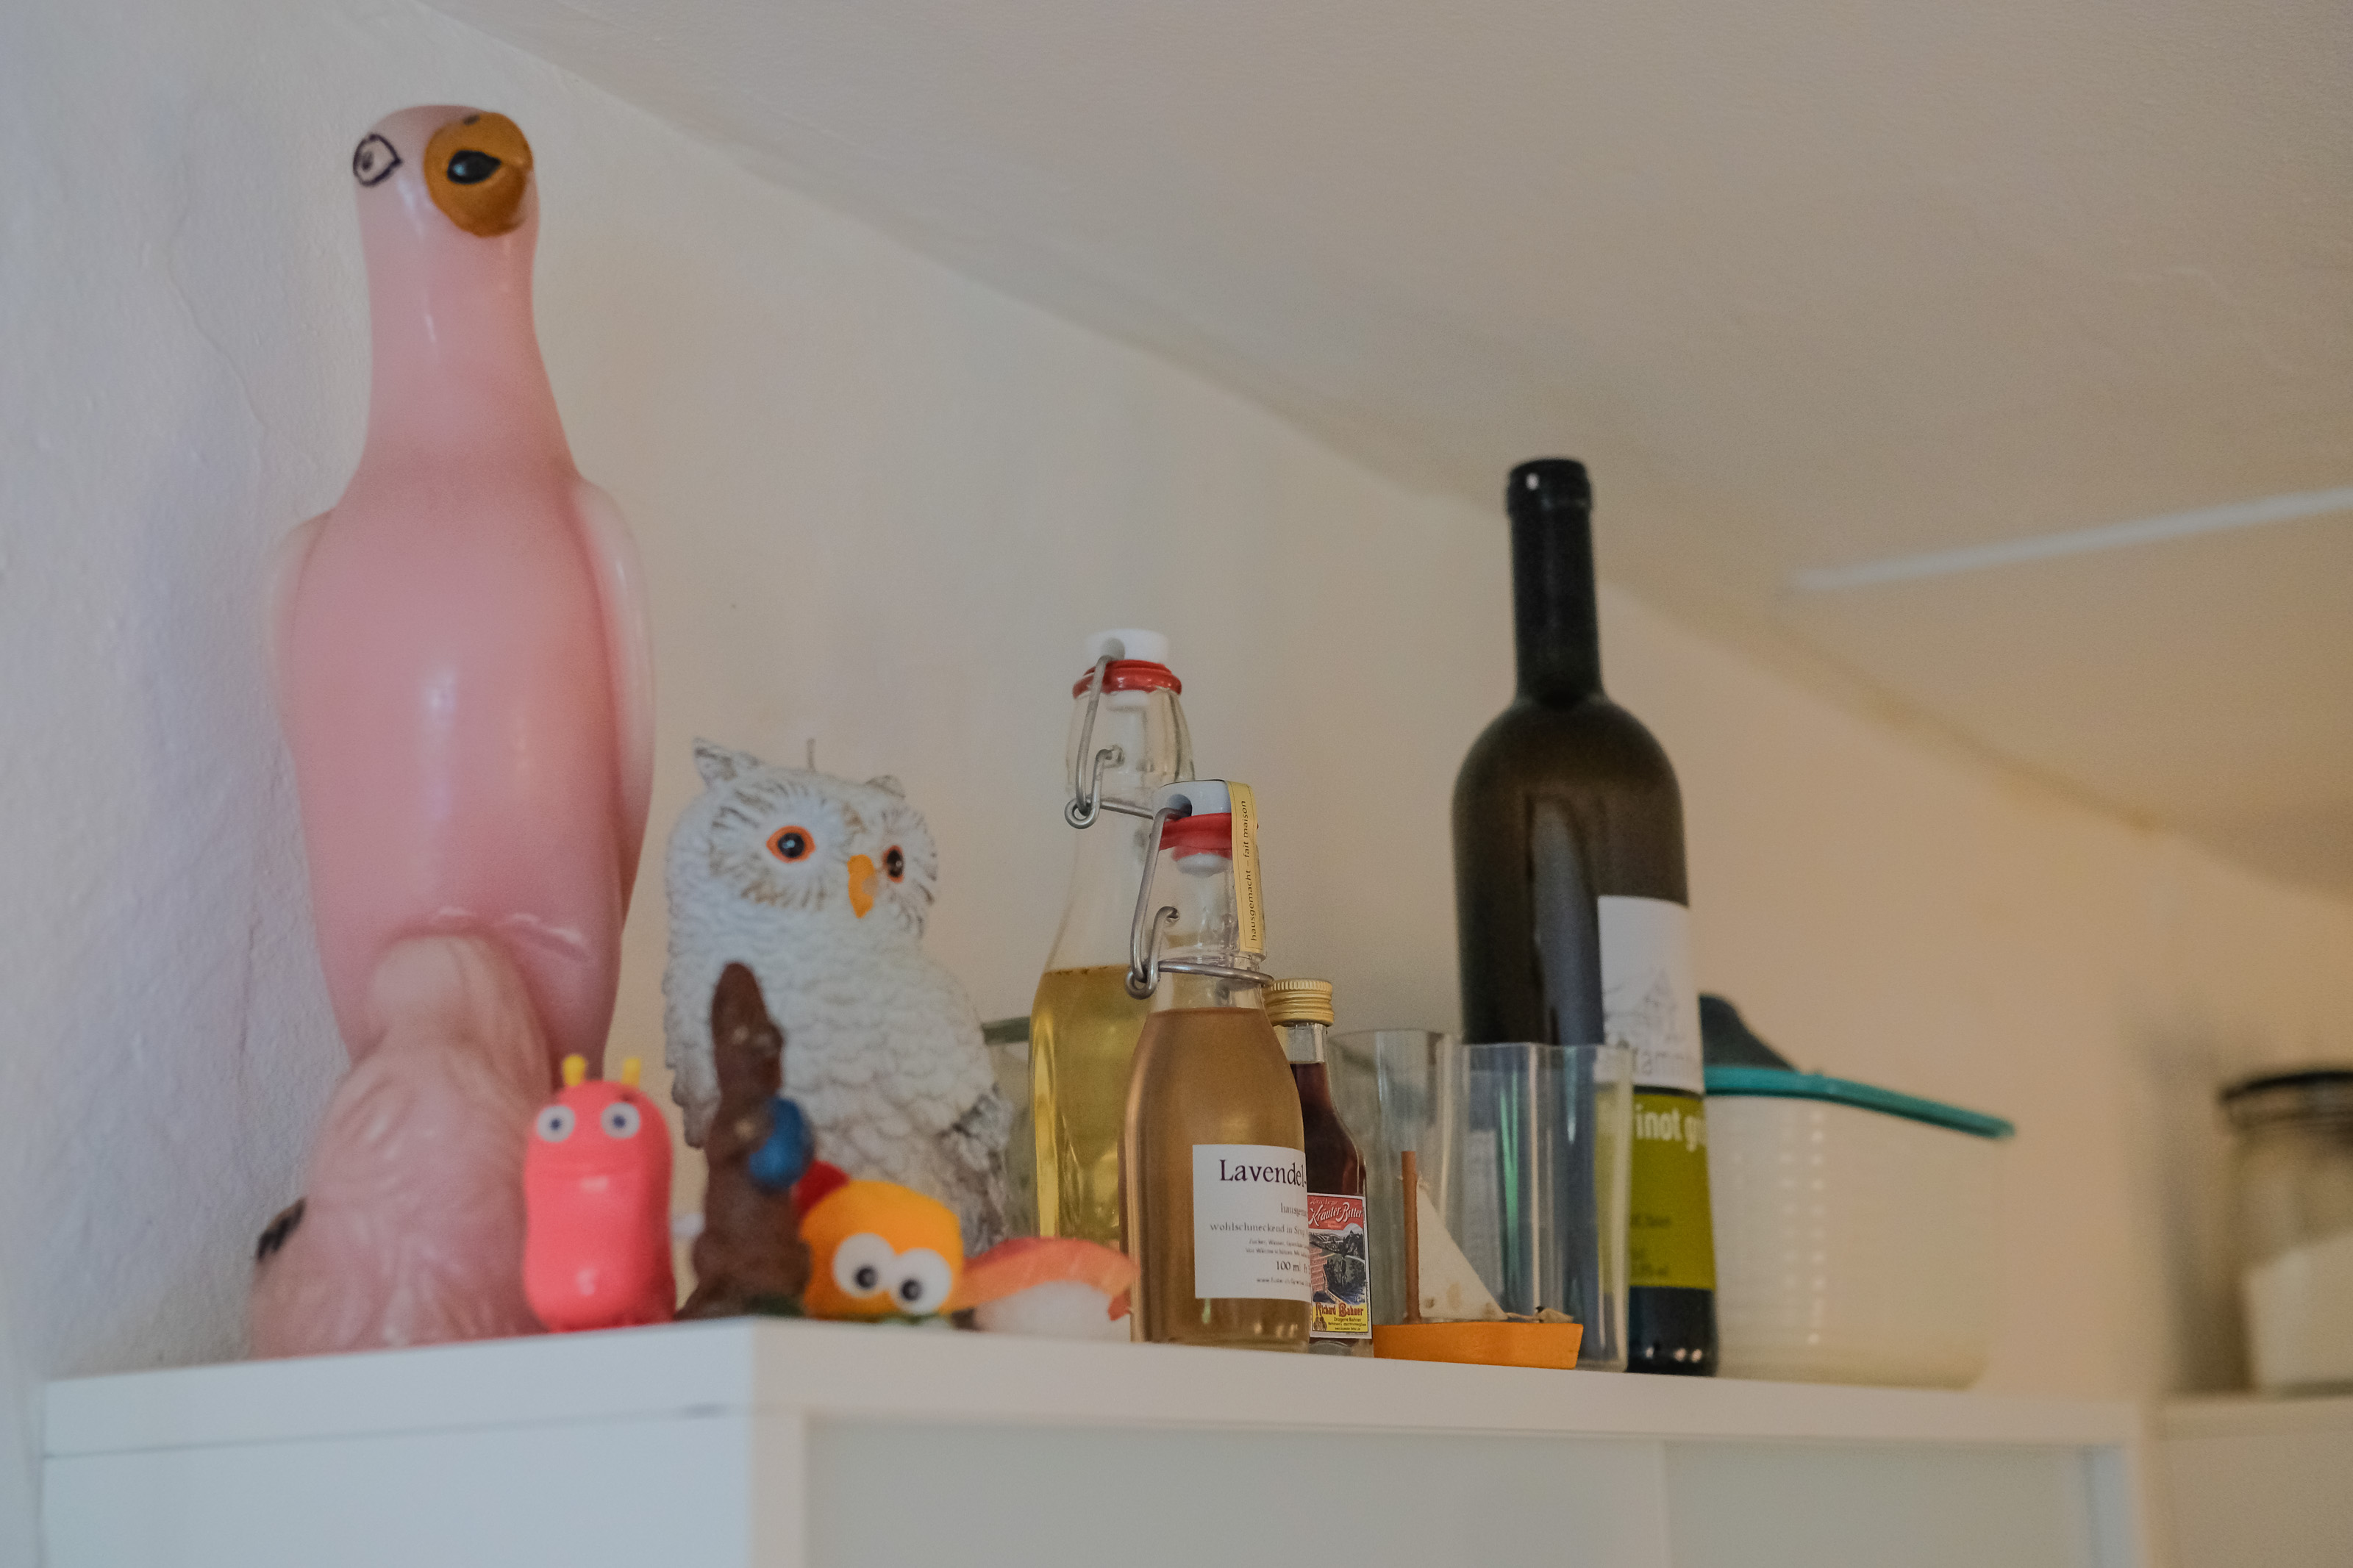 Vogelparade: Diverse Objekte auf dem Kühlschrank. Foto: Jan Graber, 2018.